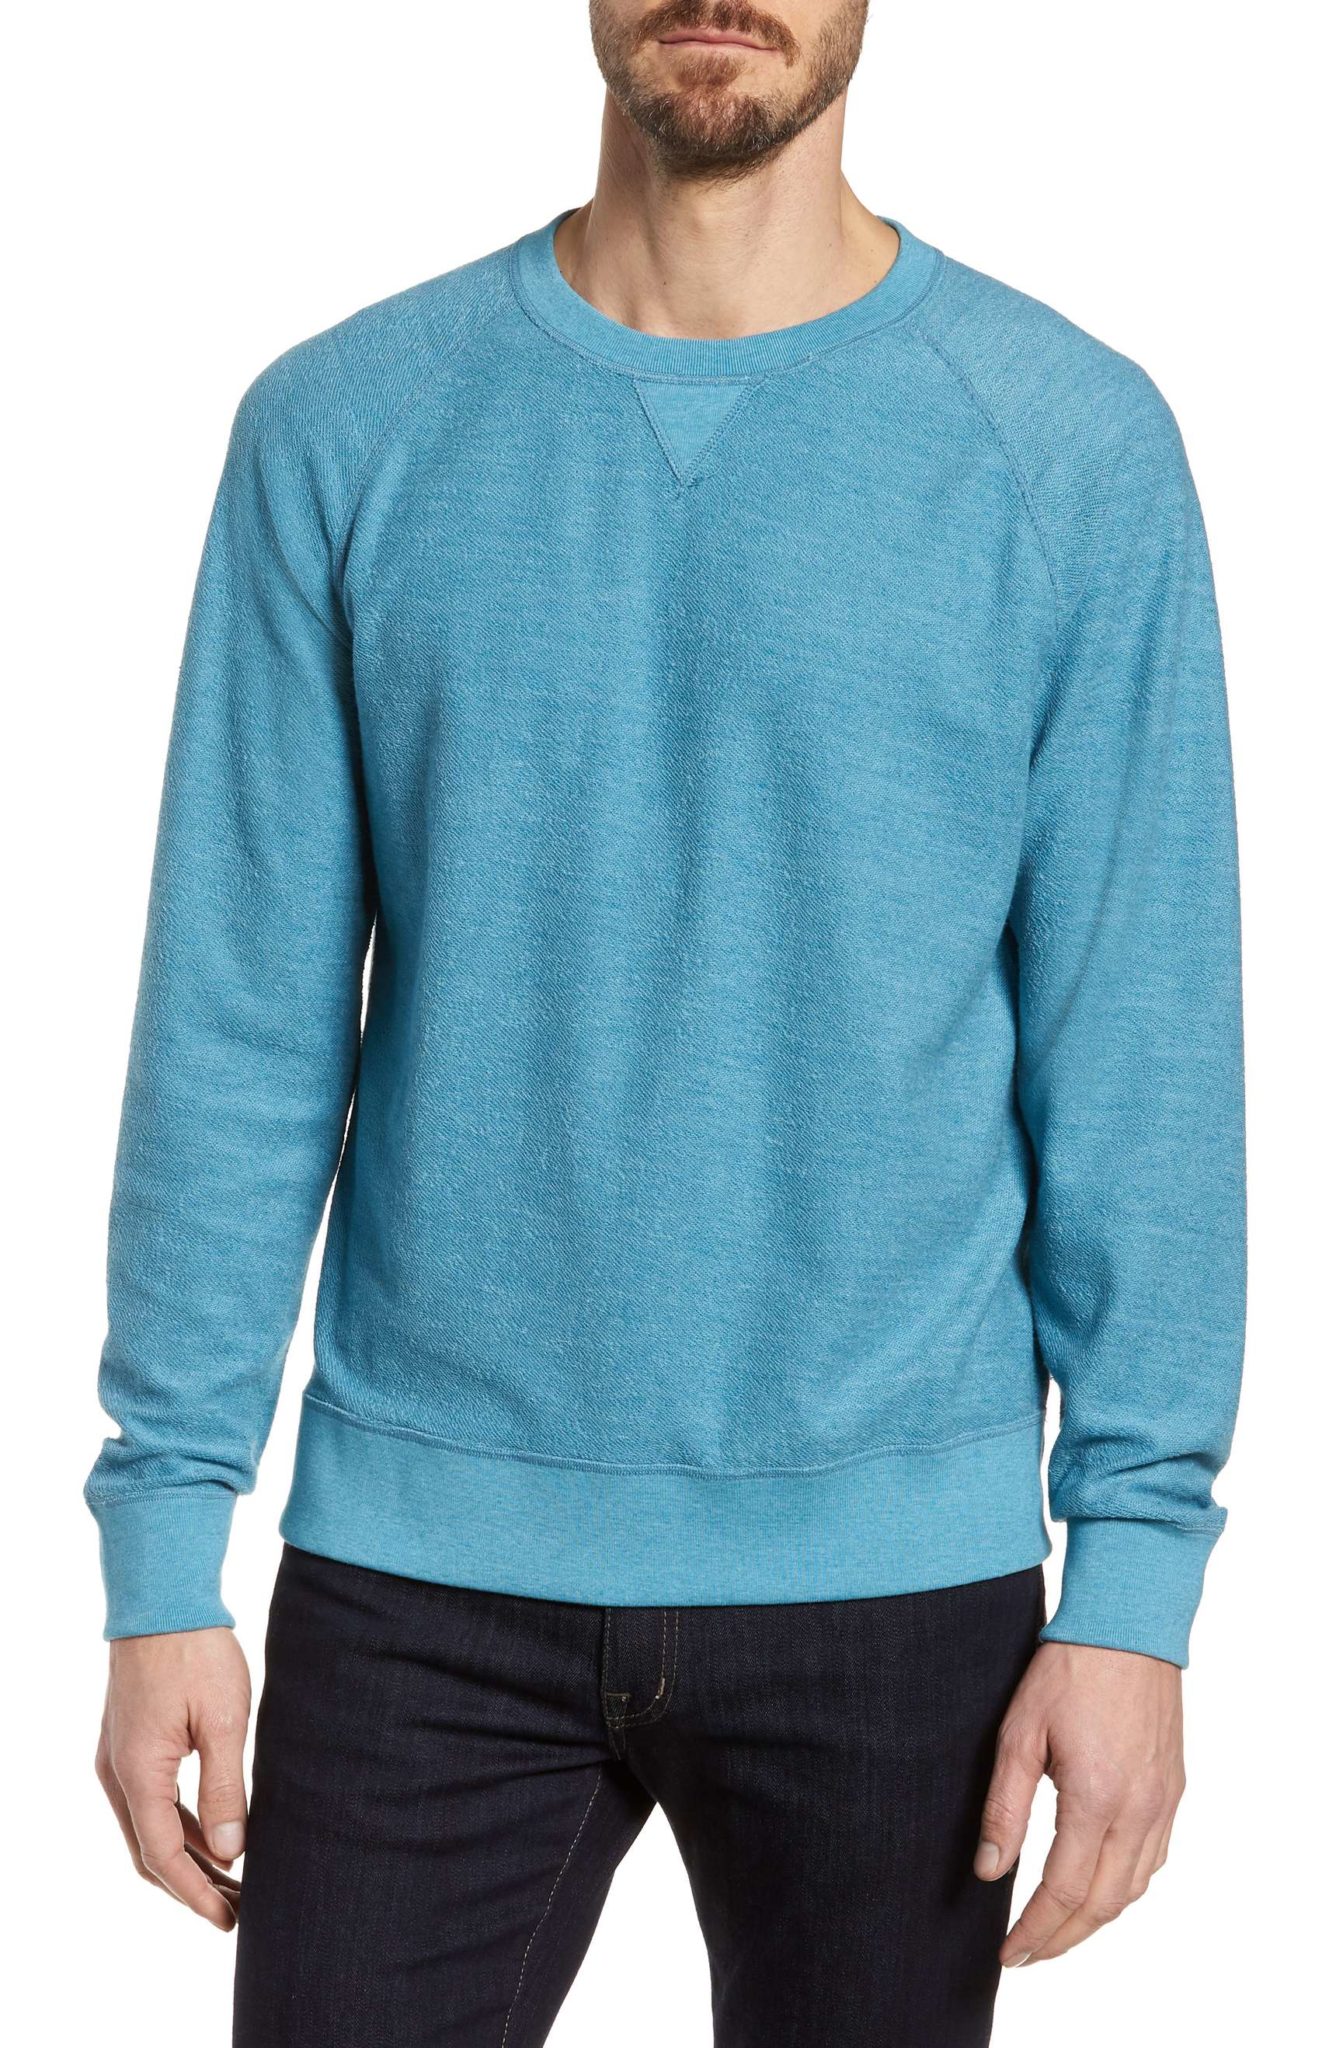 Best Sweatshirts for Men 2018: Blue Crewneck Sweatshirt 2023